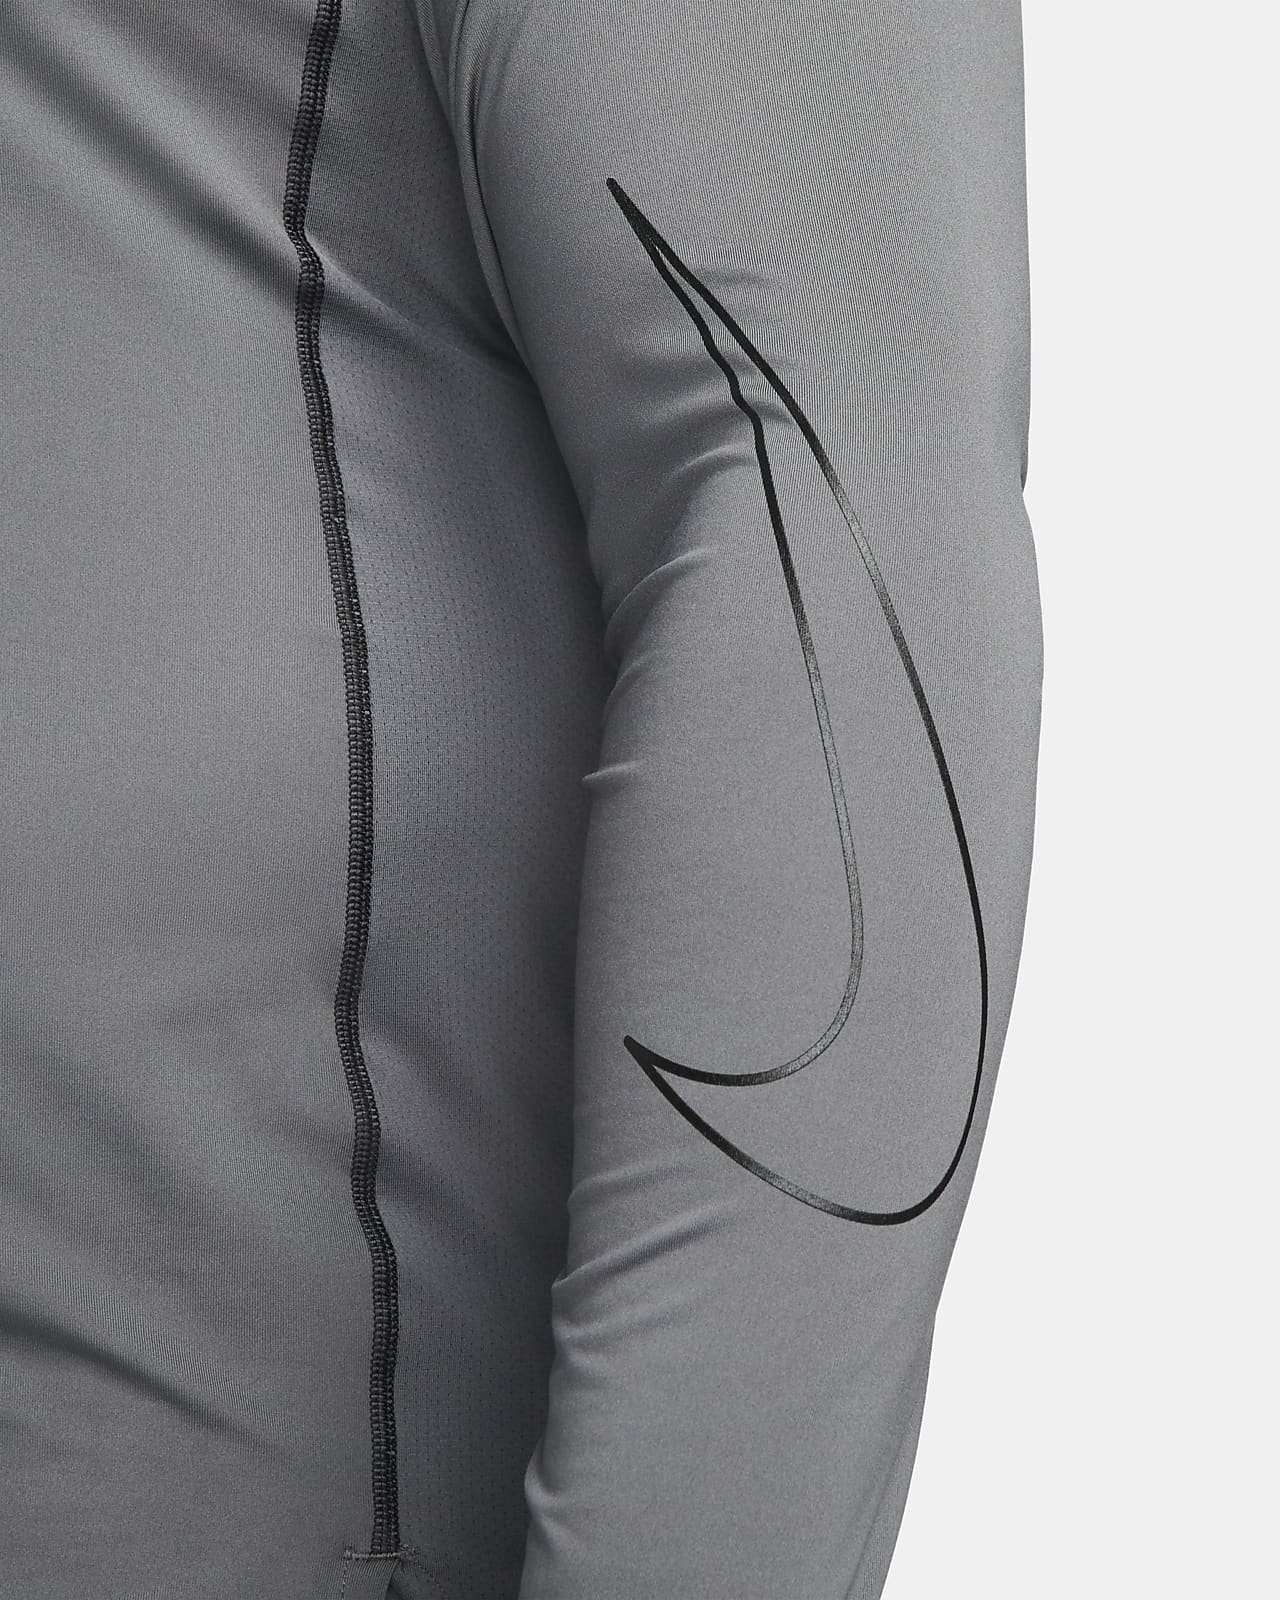 Nike Pro Bv5629-100 Haut sans manches pour homme, Noir, Grand : :  Mode